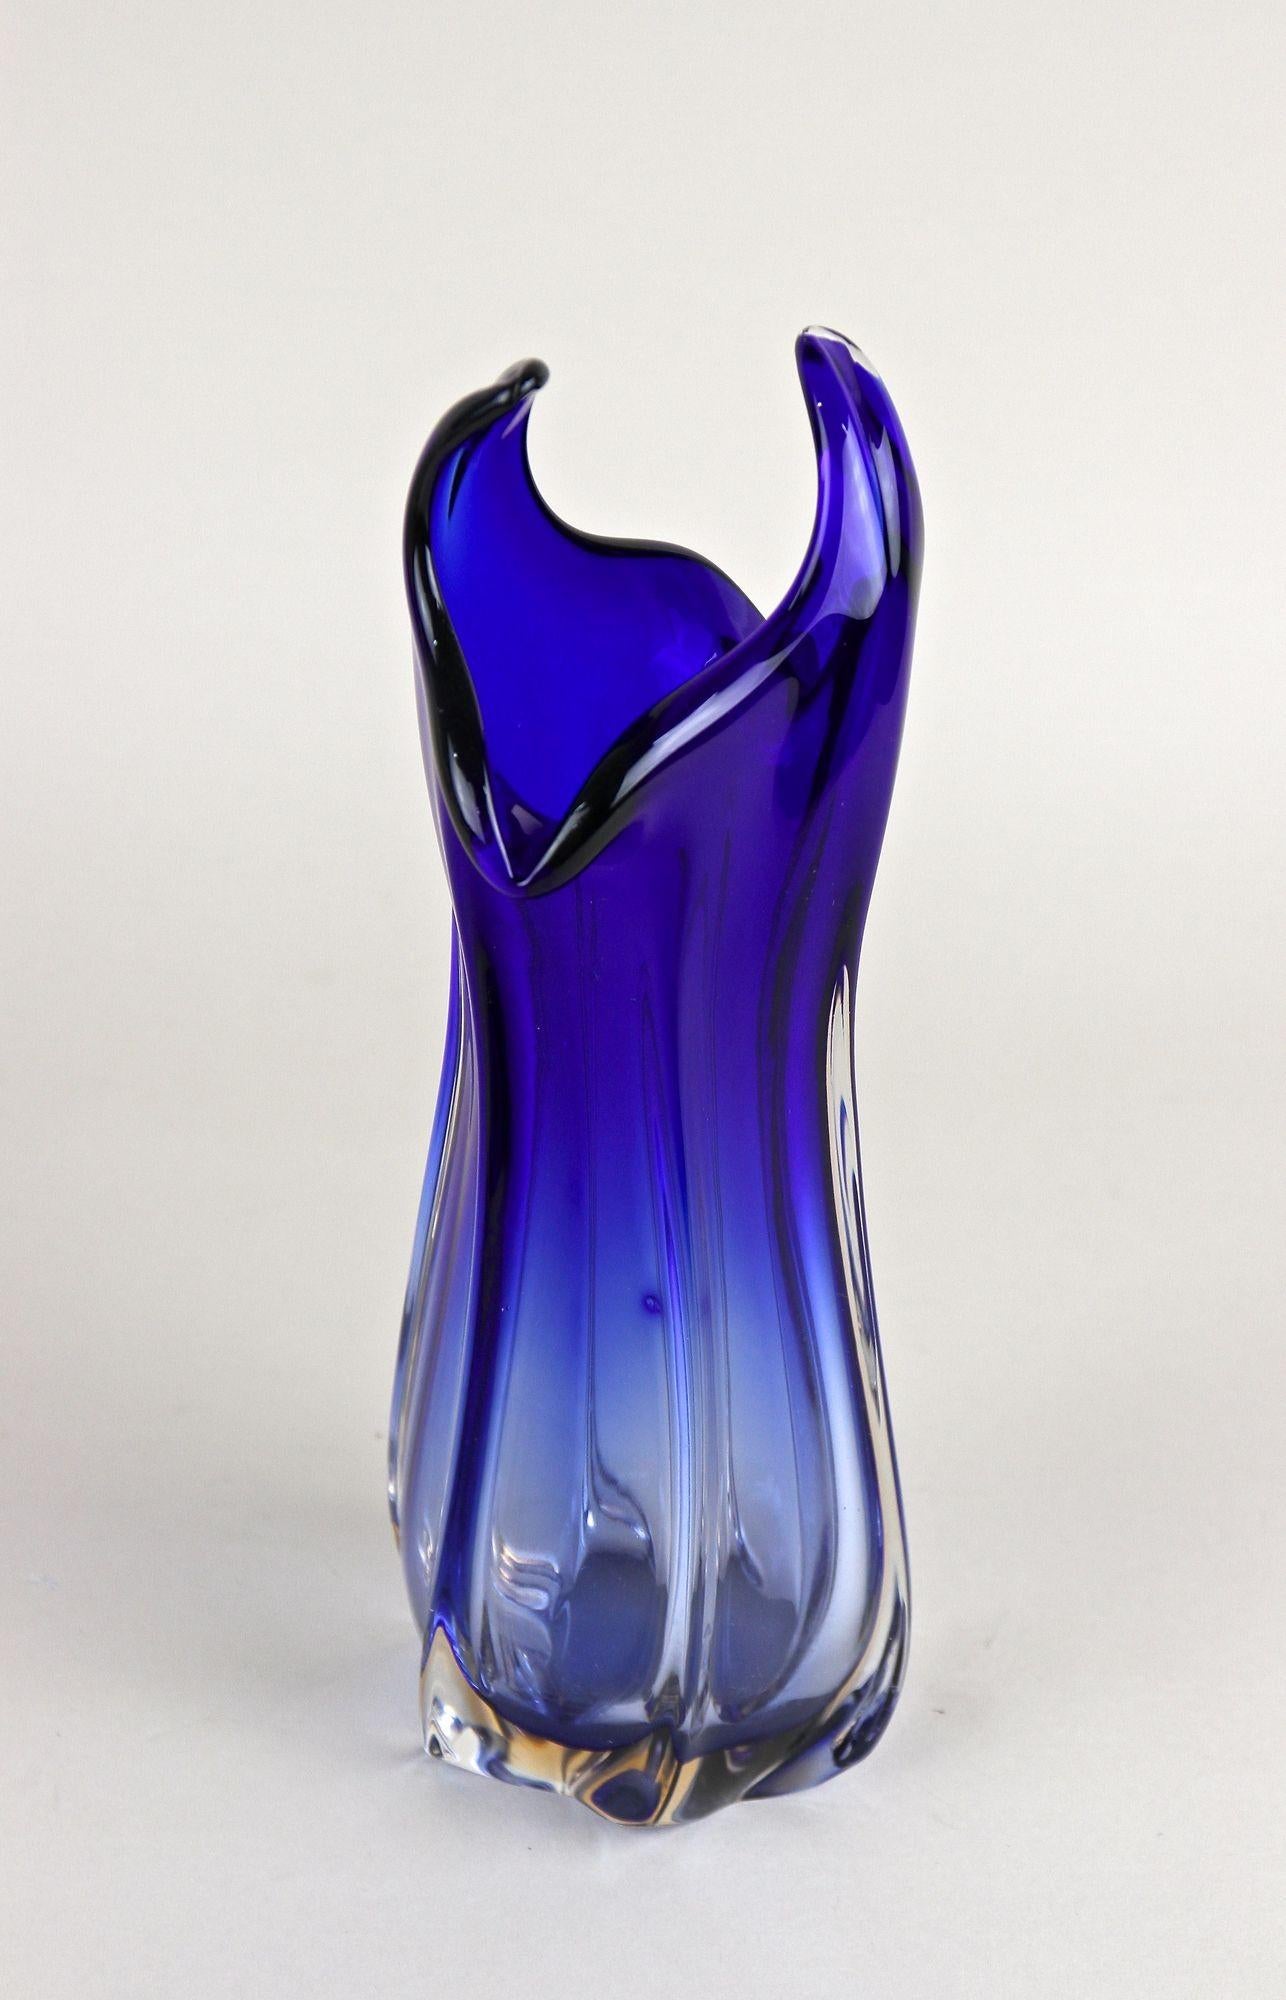 Contemporary Dark Blue Murano Glass Vase, Italy circa 1970 For Sale 2